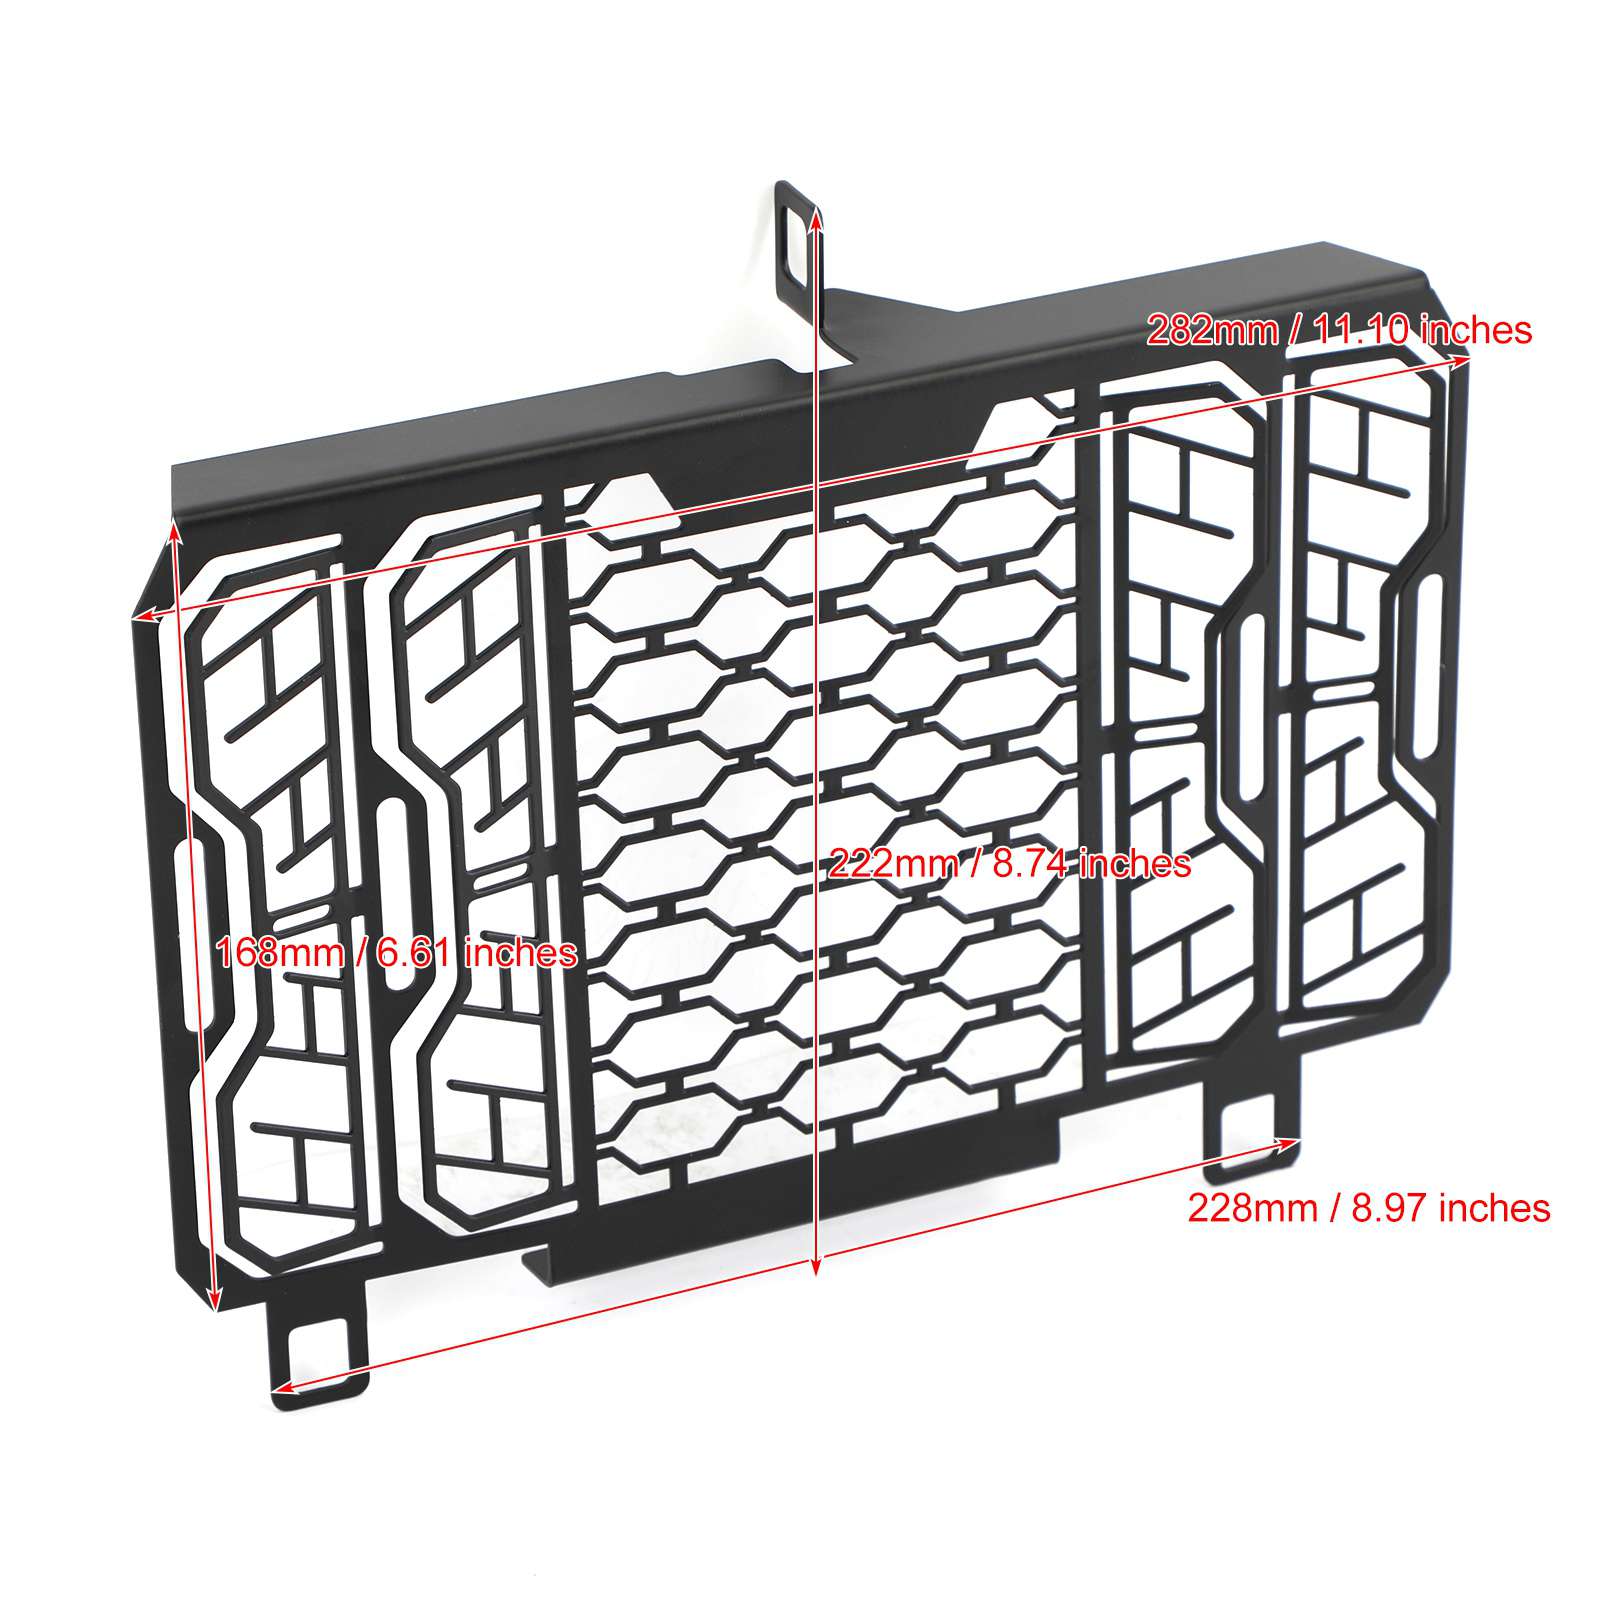 Protecteur de cache de radiateur noir pour Honda CB 500 X 2013 - 2020 Generic